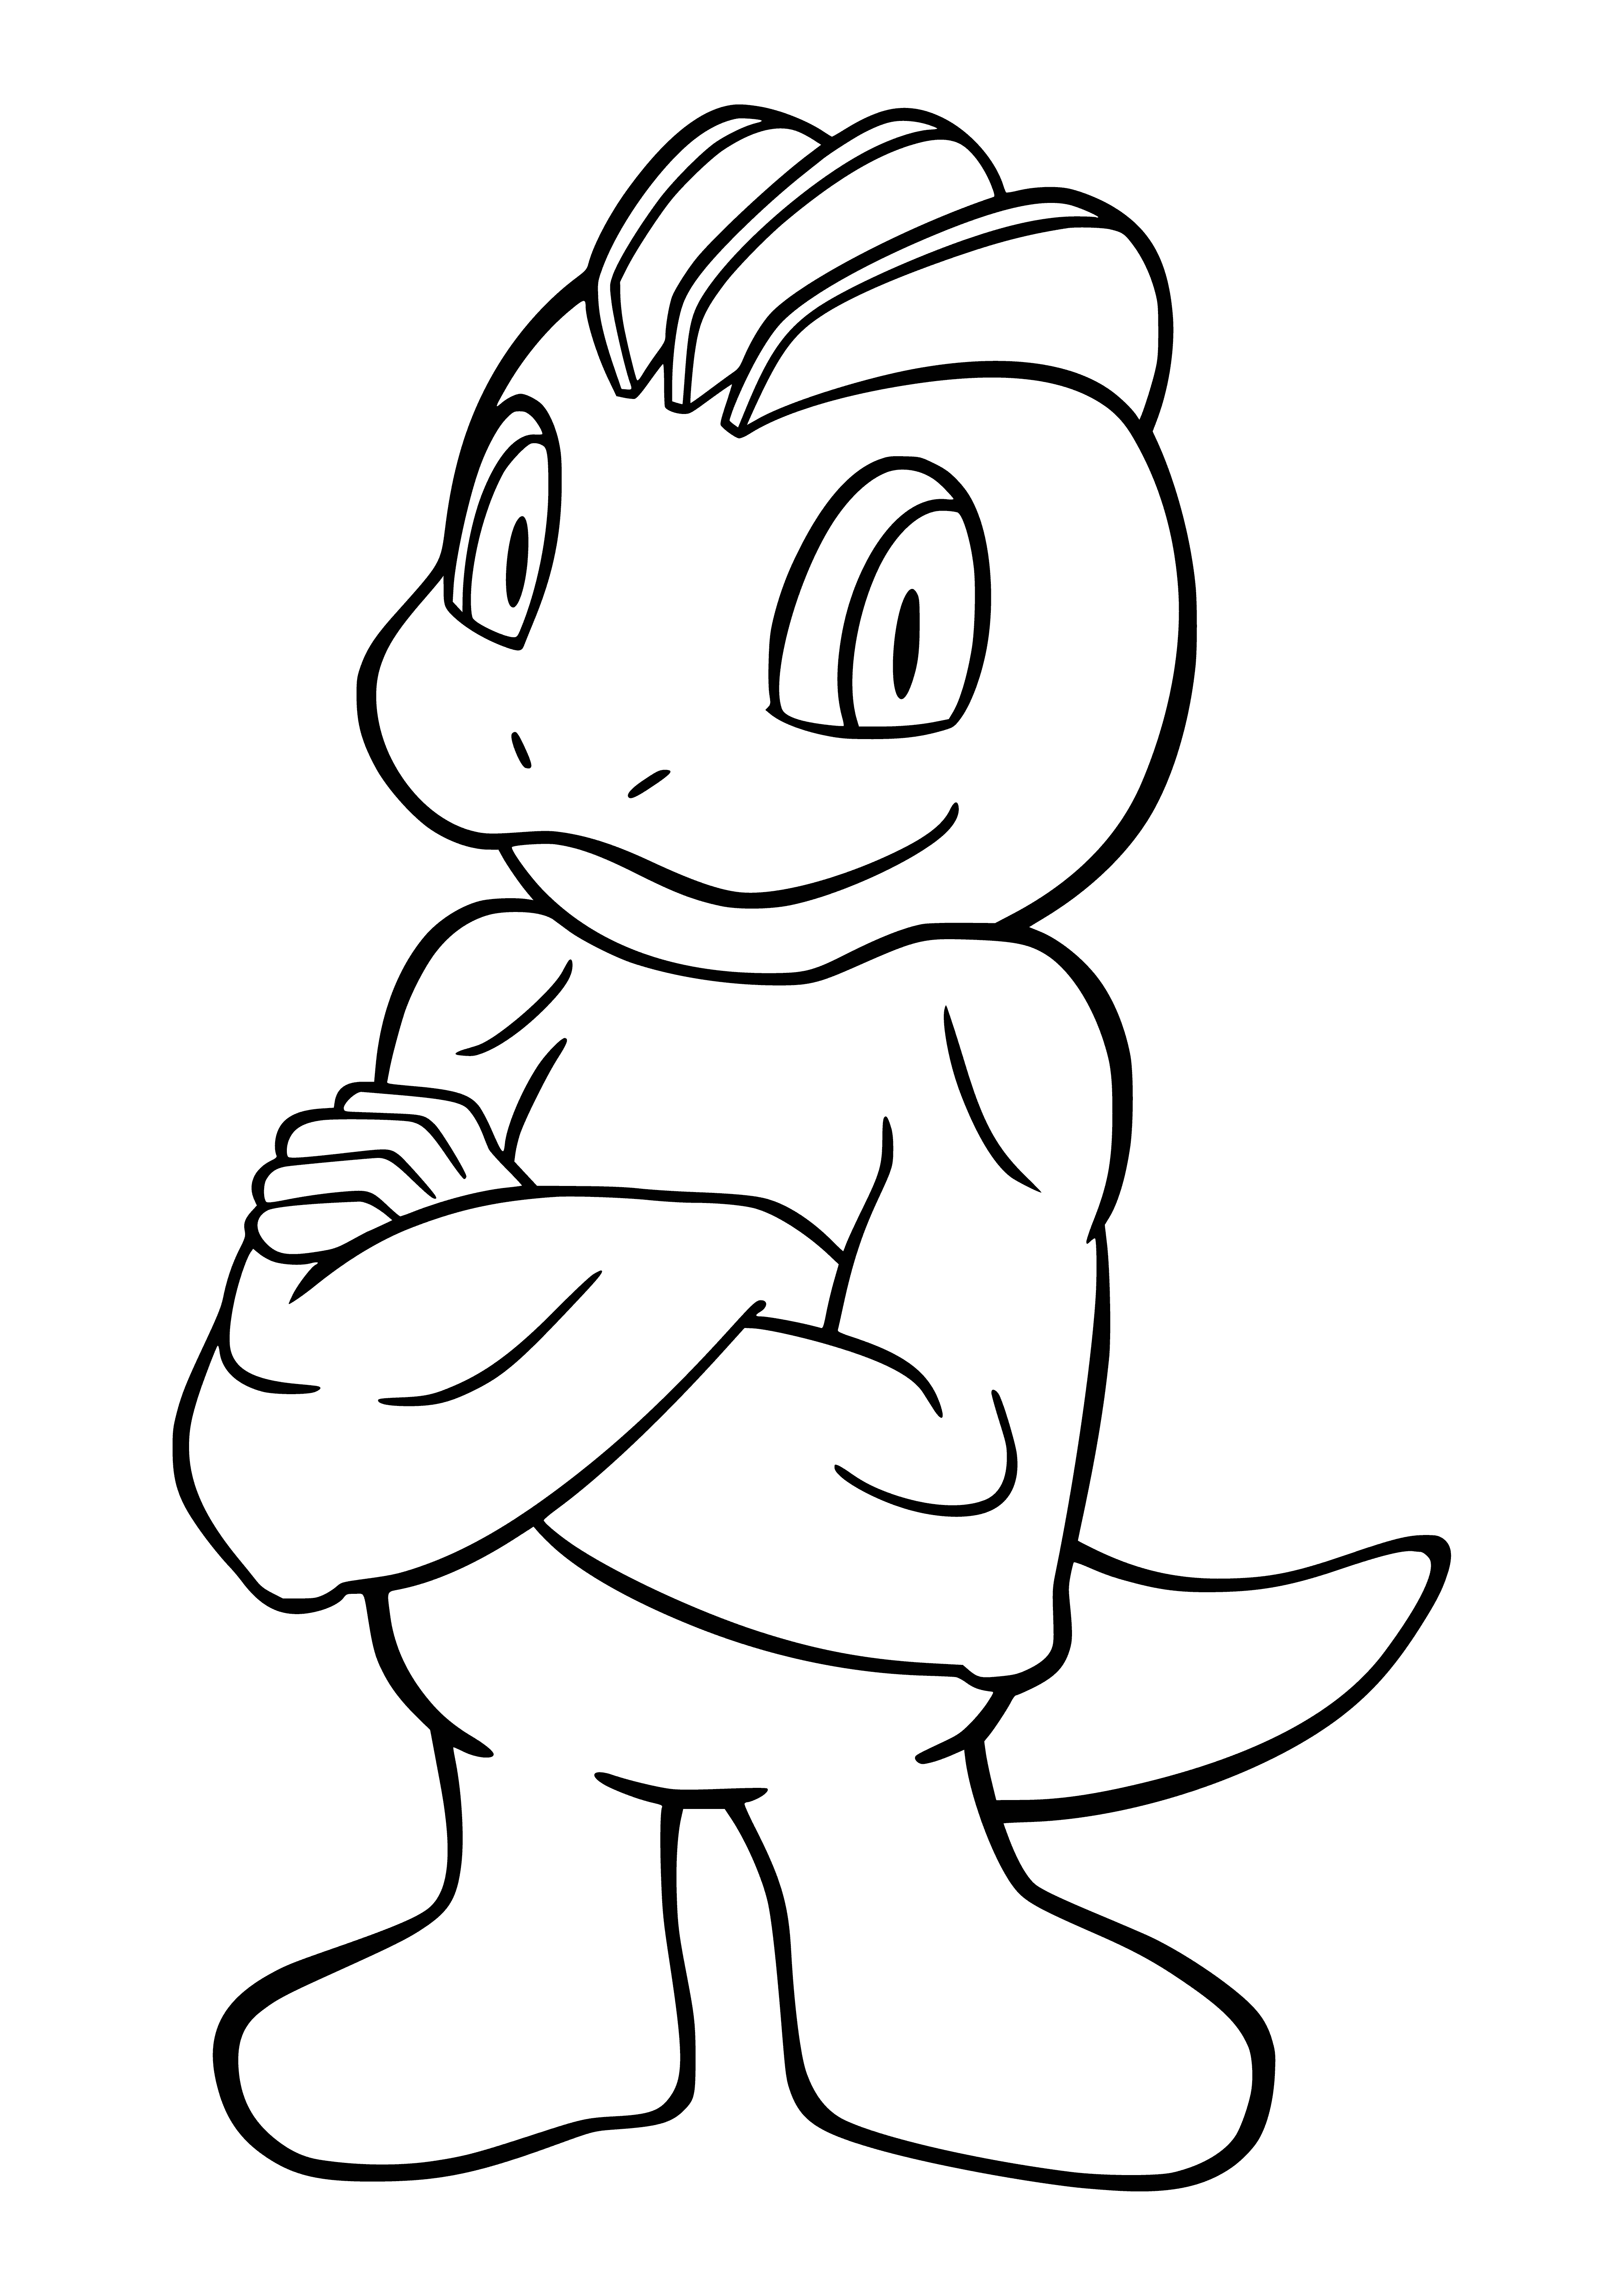 Pokemon Machop coloring page